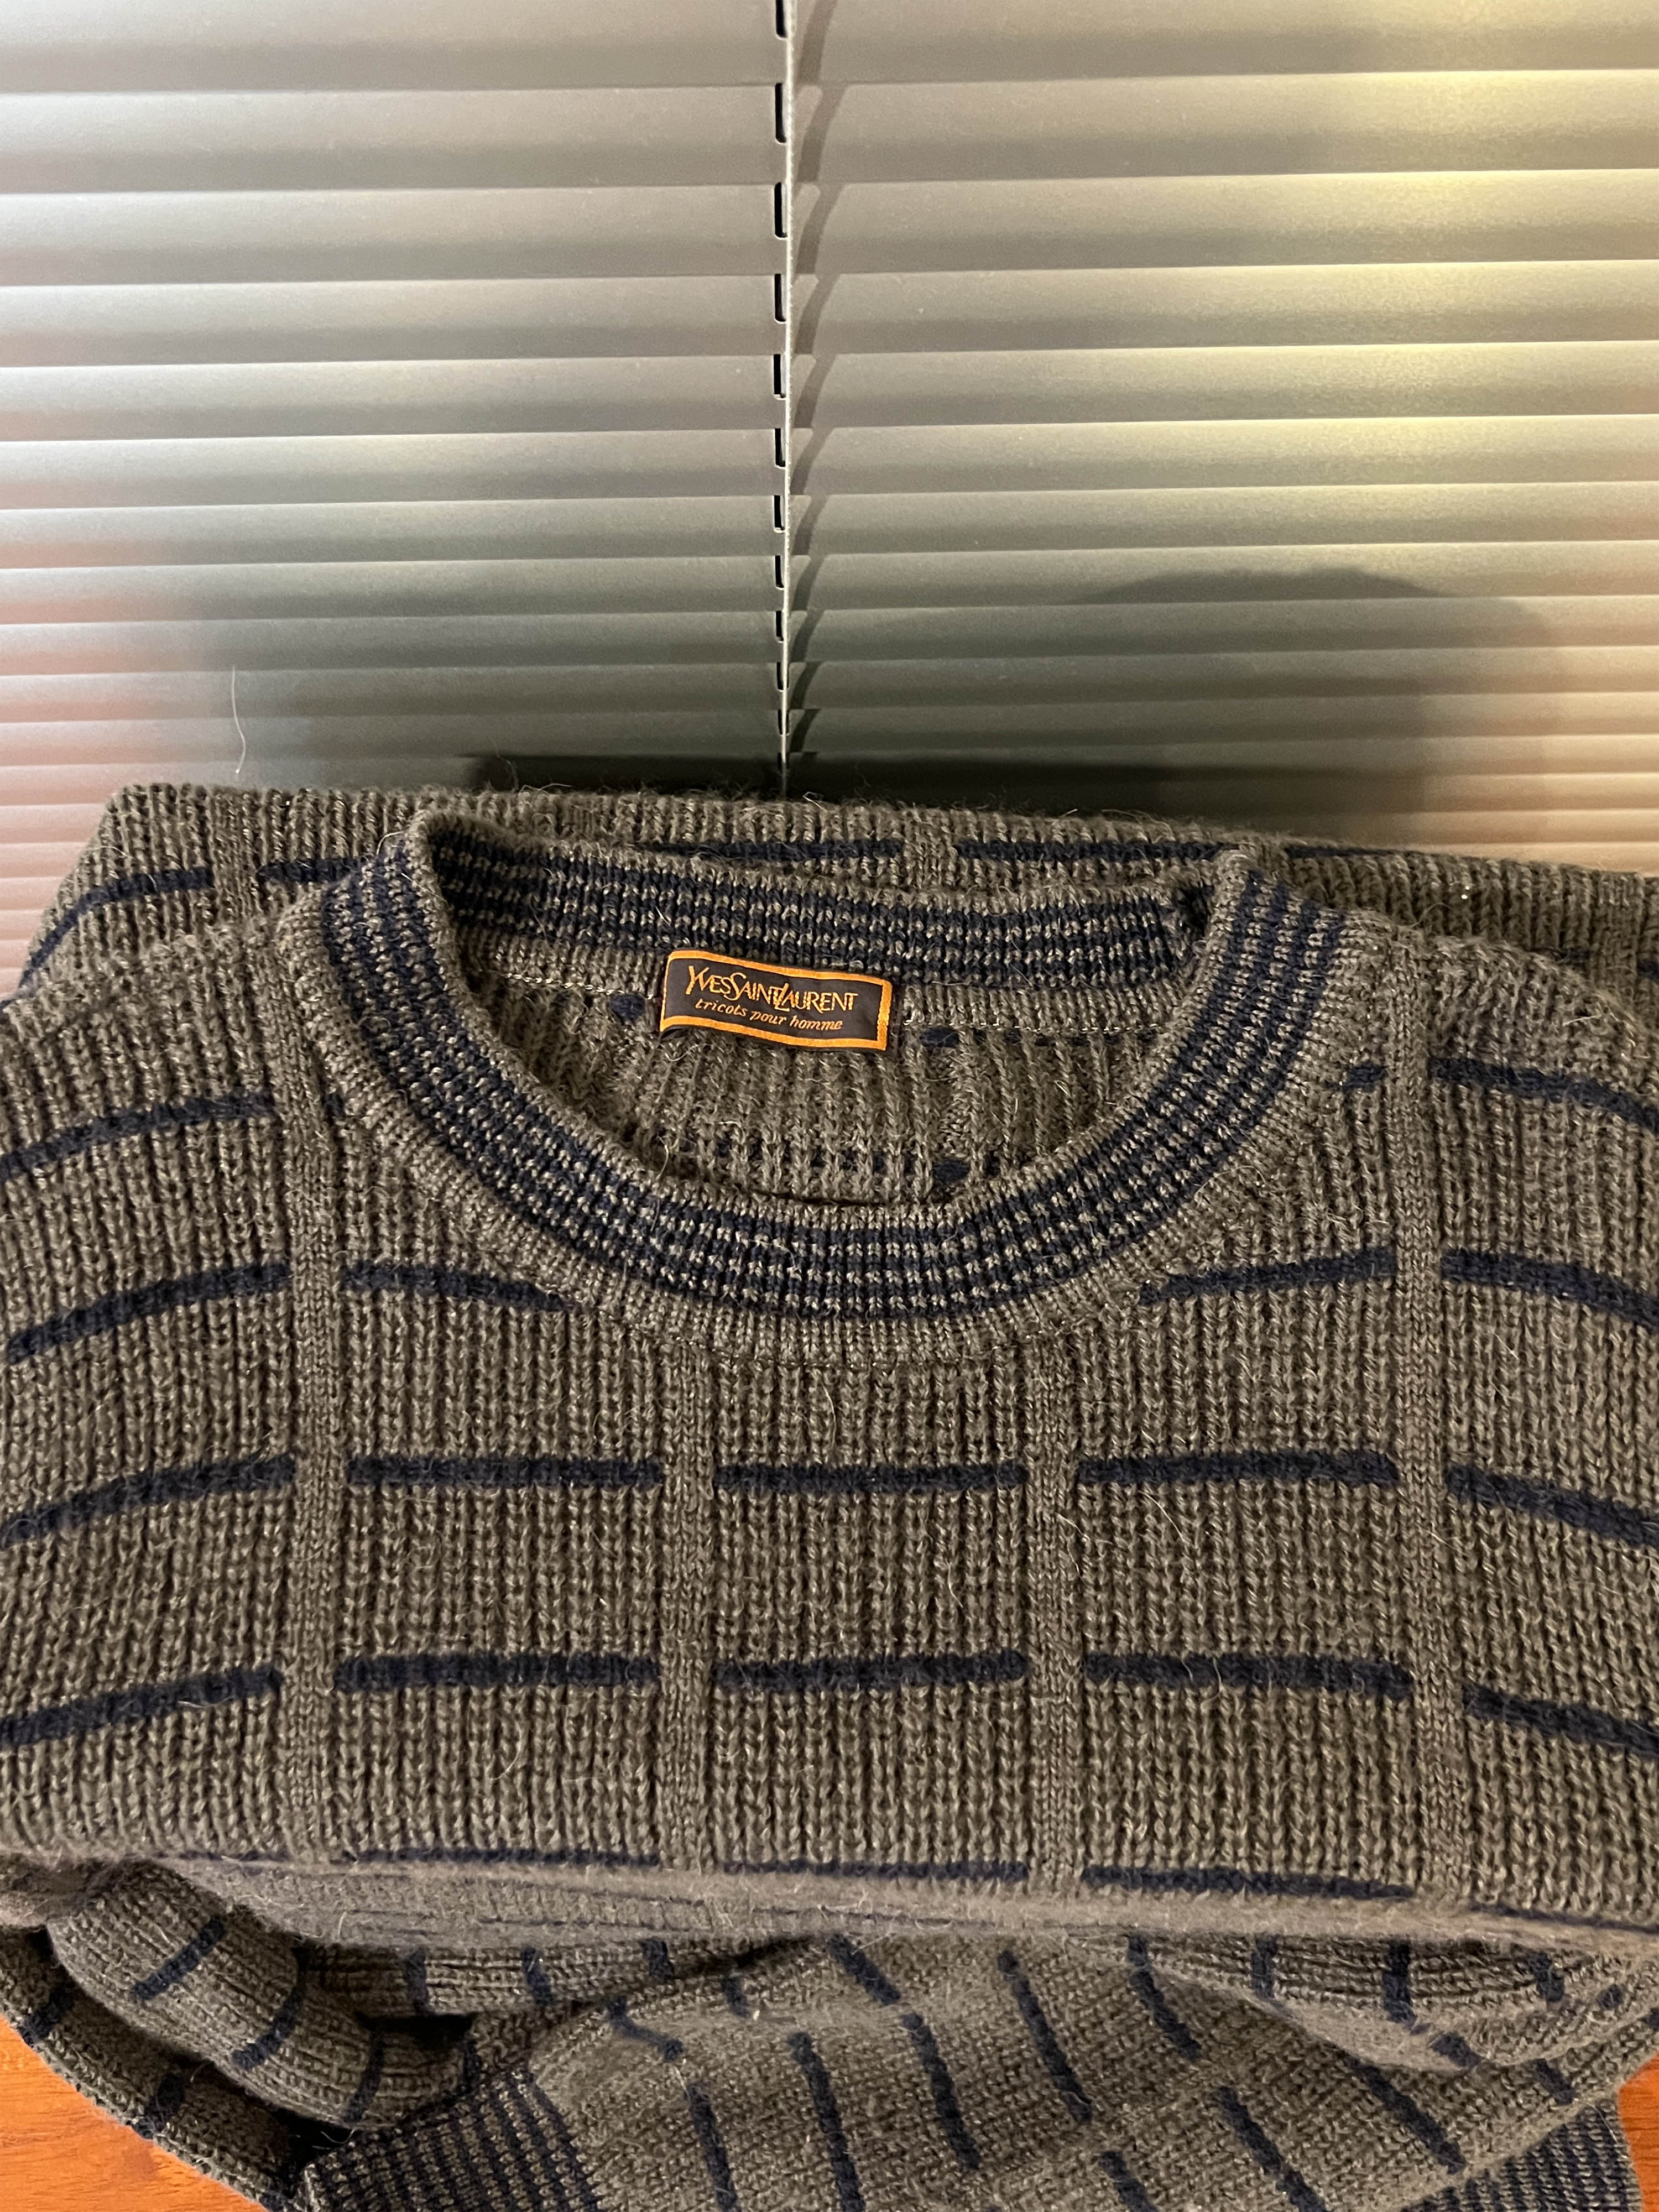 Yves Saint Laurent knit